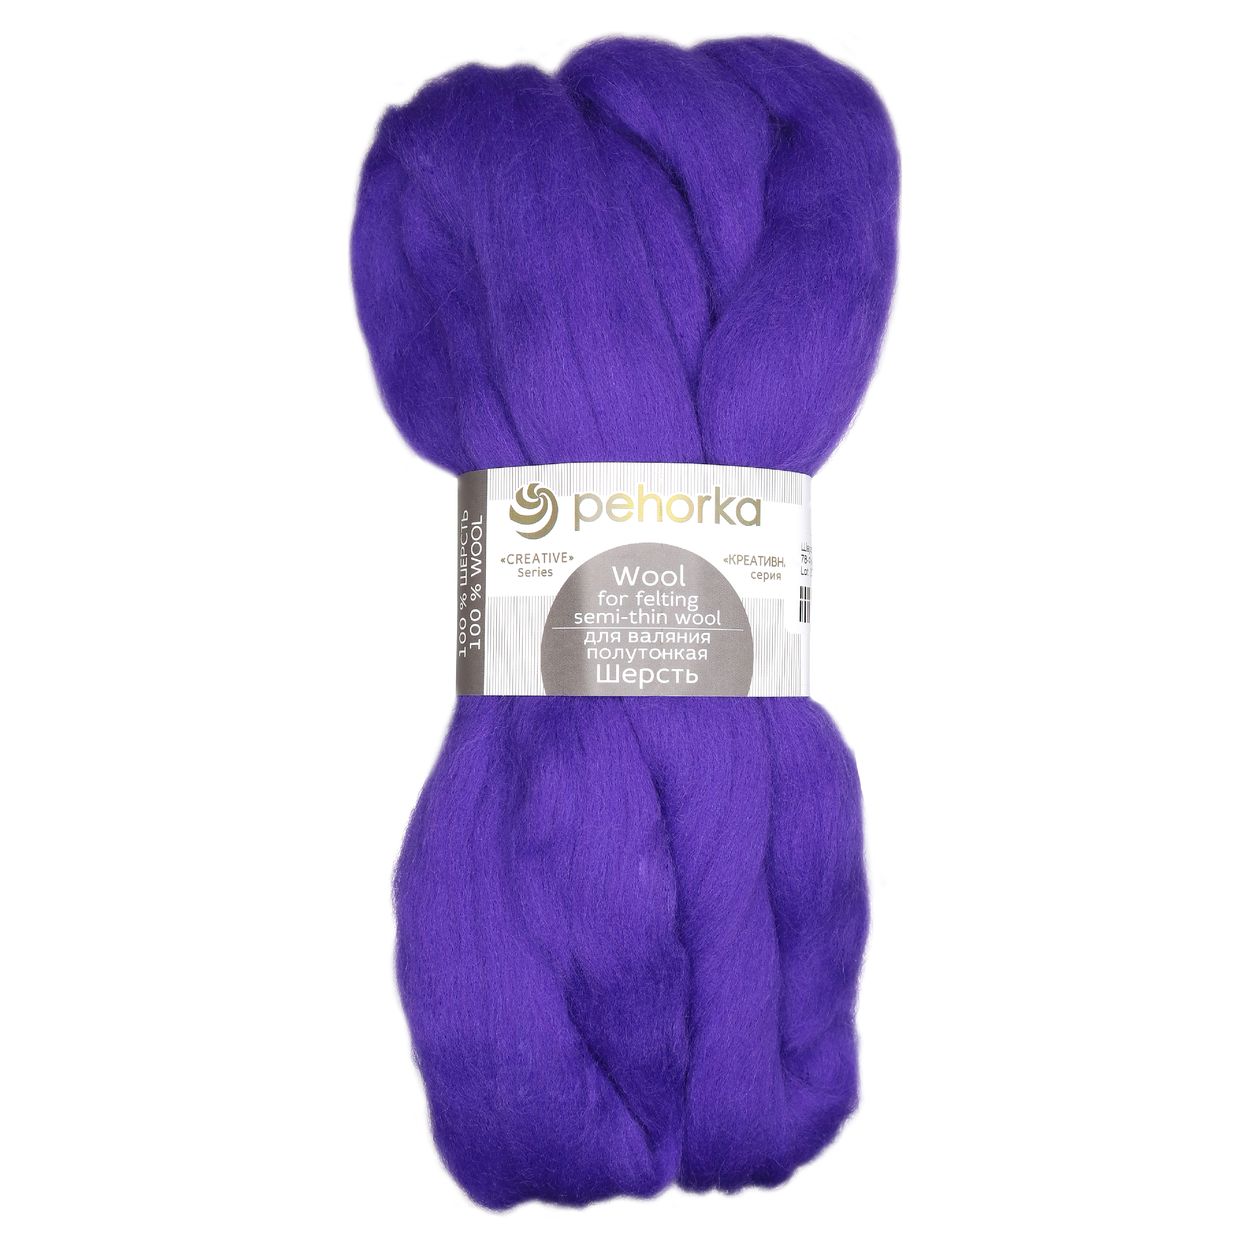 Шерсть для валяния Пехорка полутонкая (100 % шерсть) 50 г № 078 фиолетовый